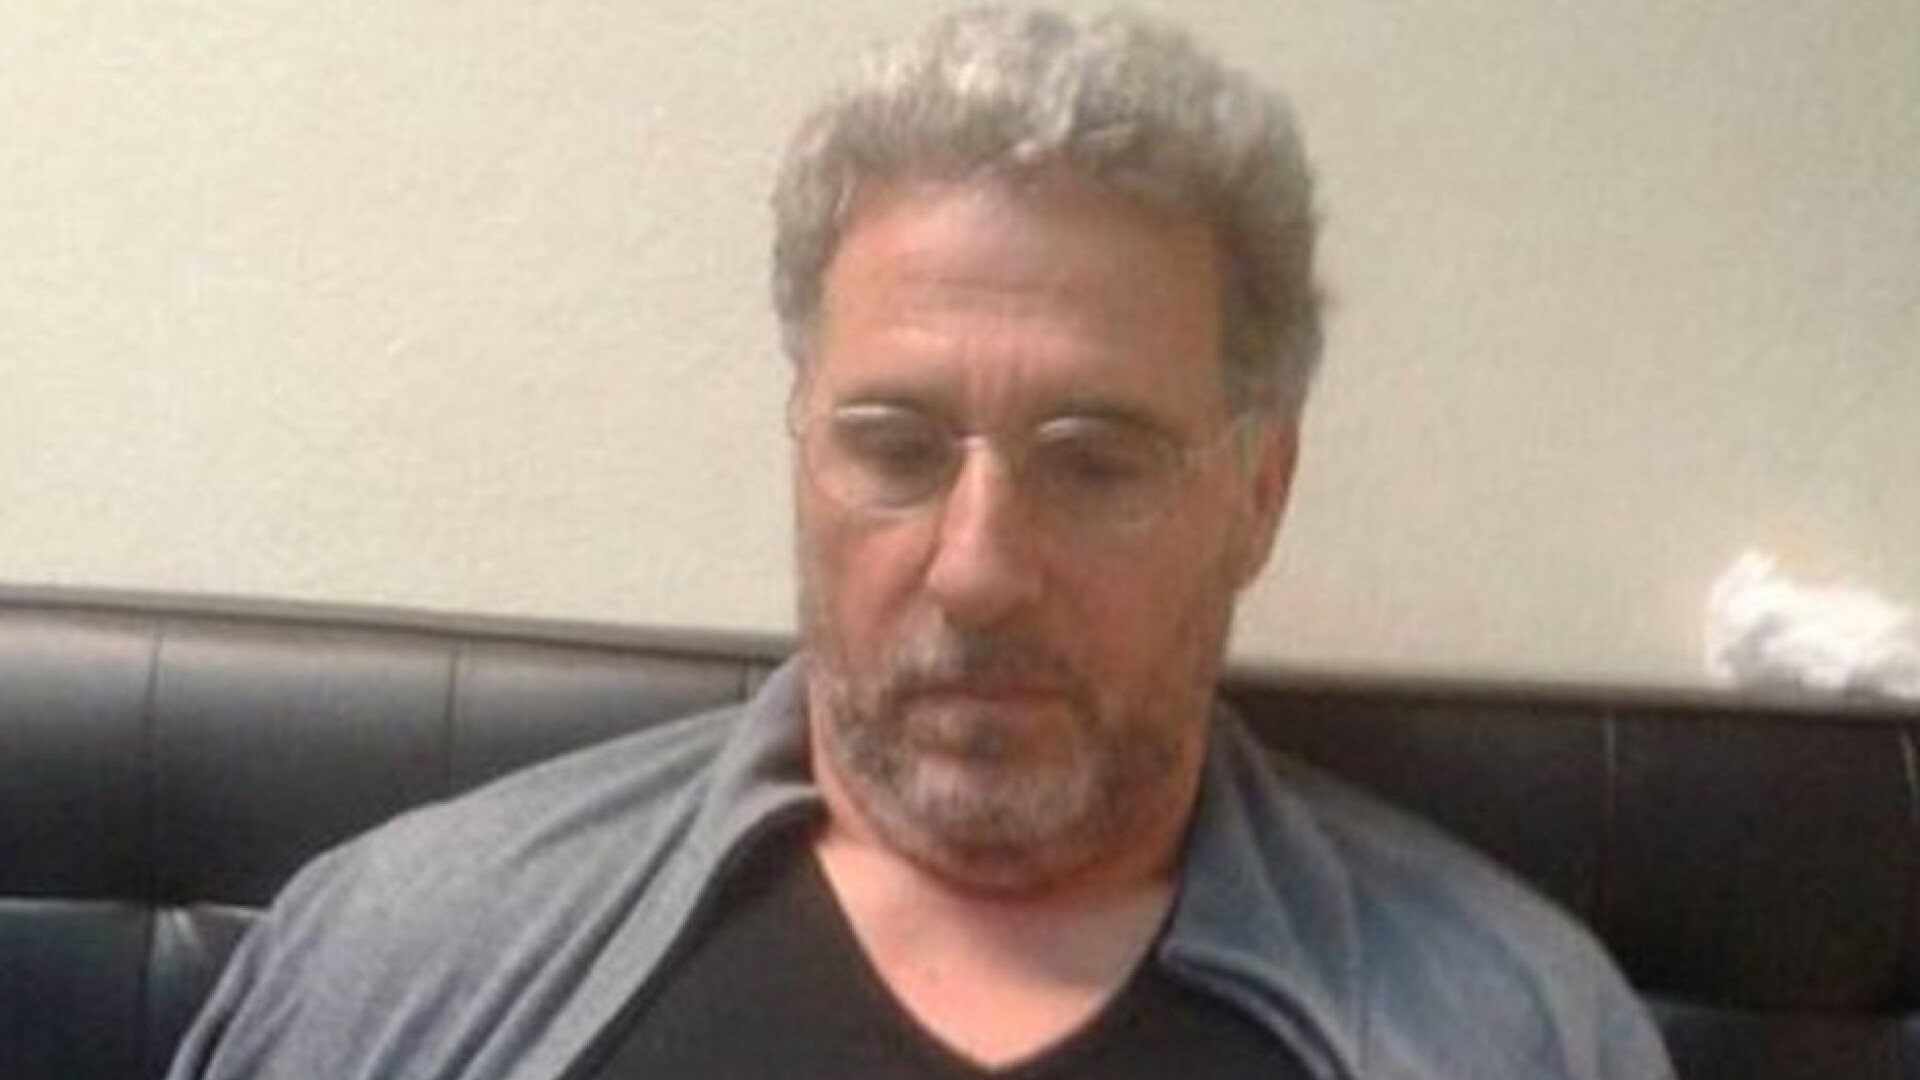 Rocco Morabito a fost arestat. Șeful 'Ndrangheta evadase din închisoare în urmă cu doi ani